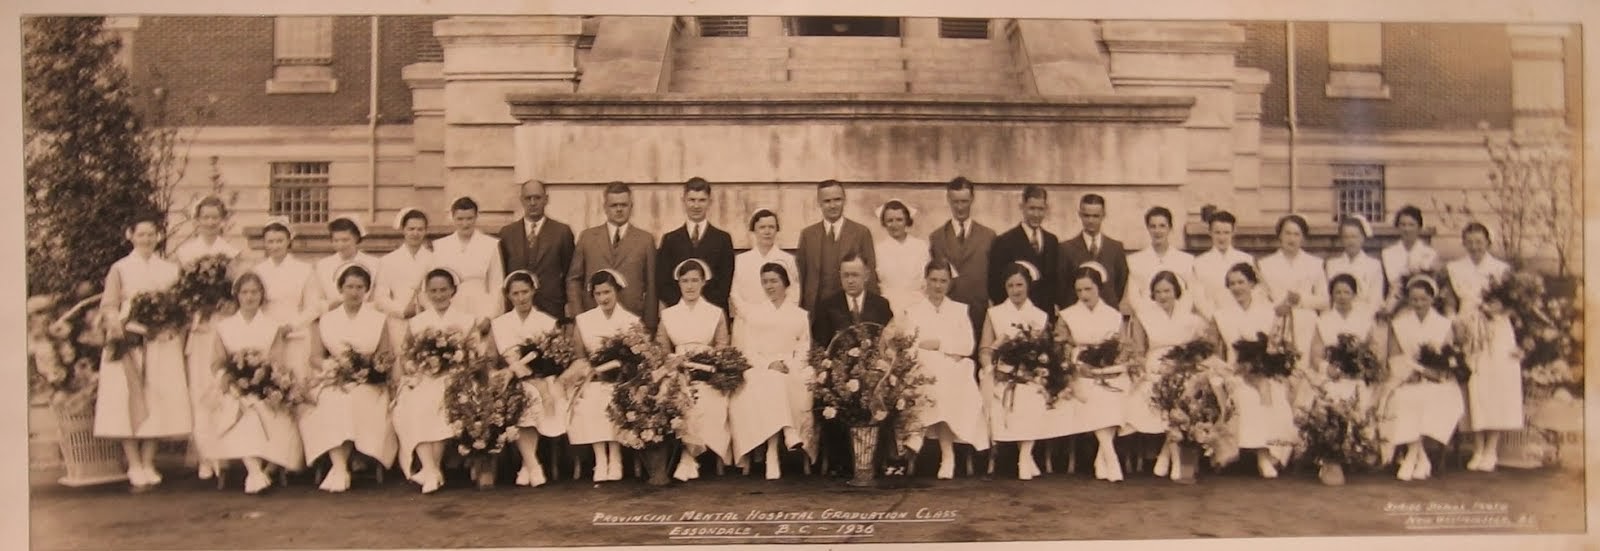 1936 graduates